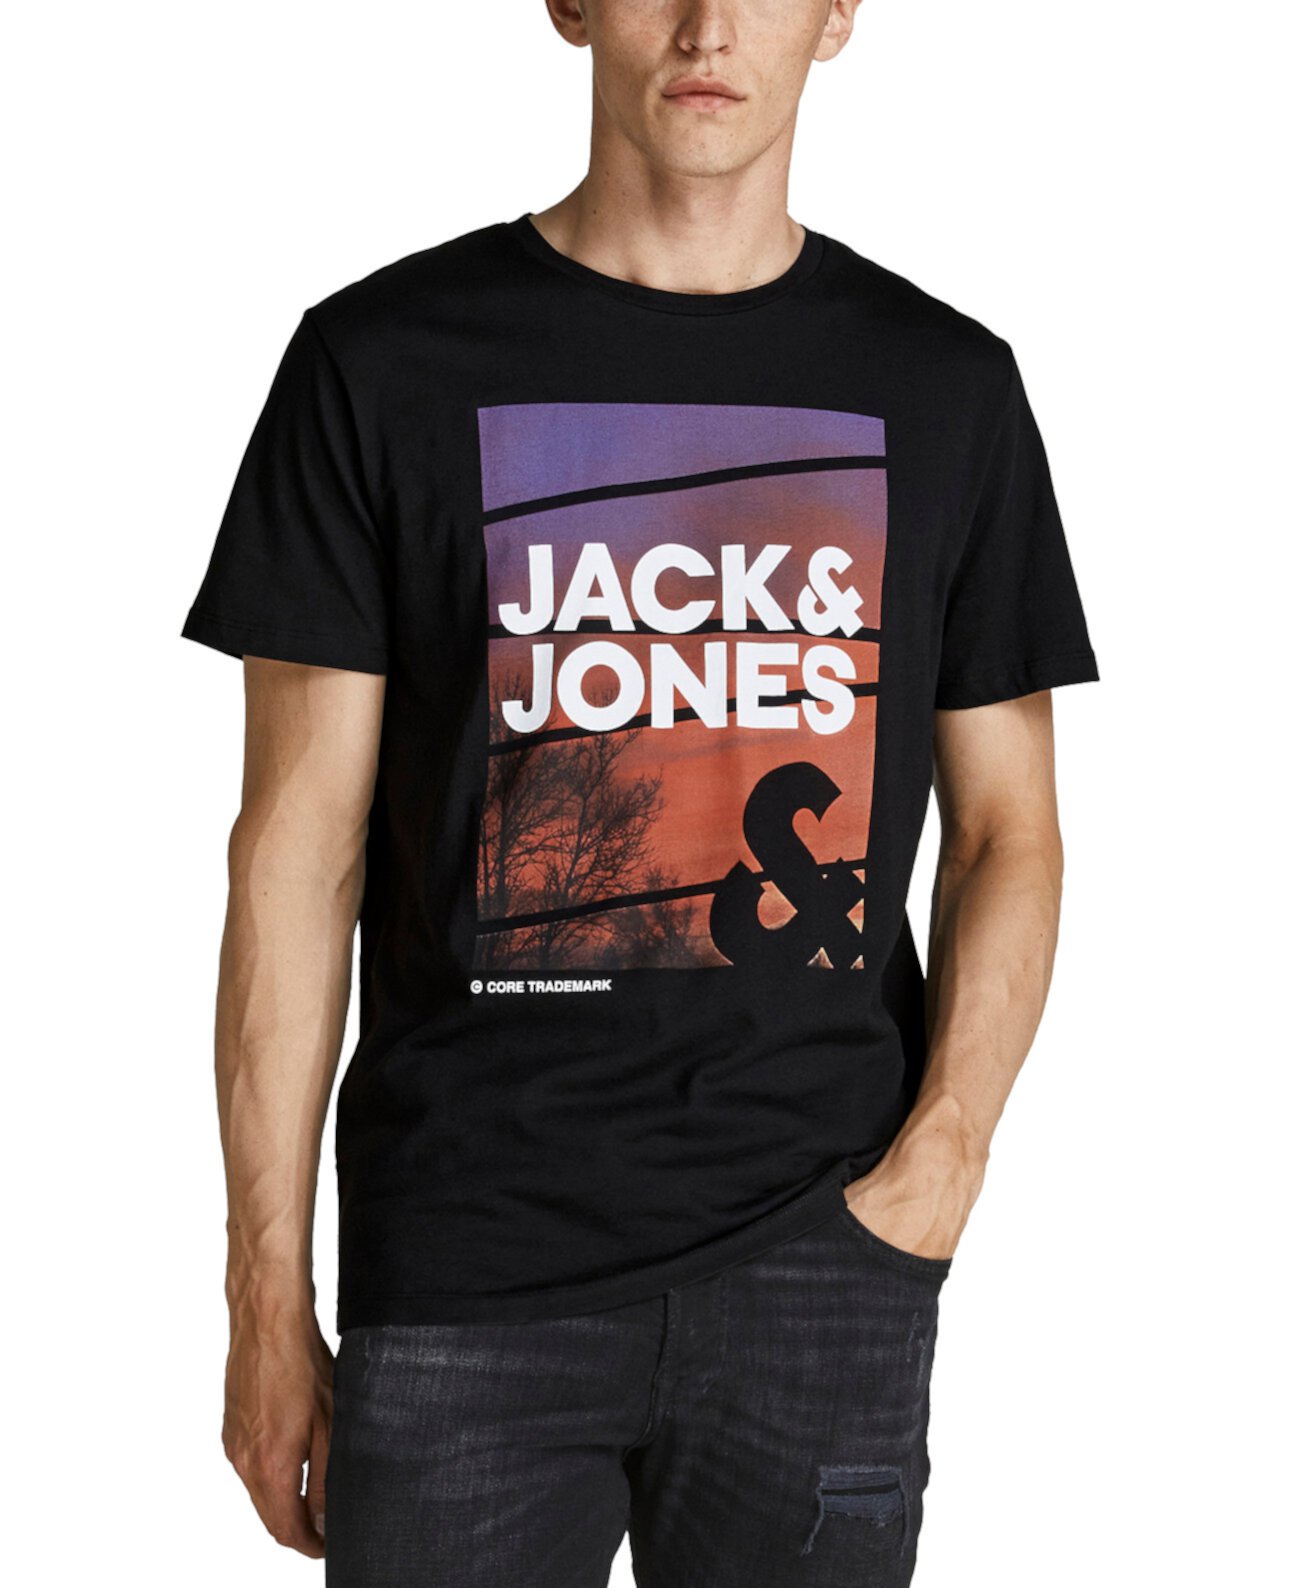 Мужская футболка с графическим изображением города Jack & Jones